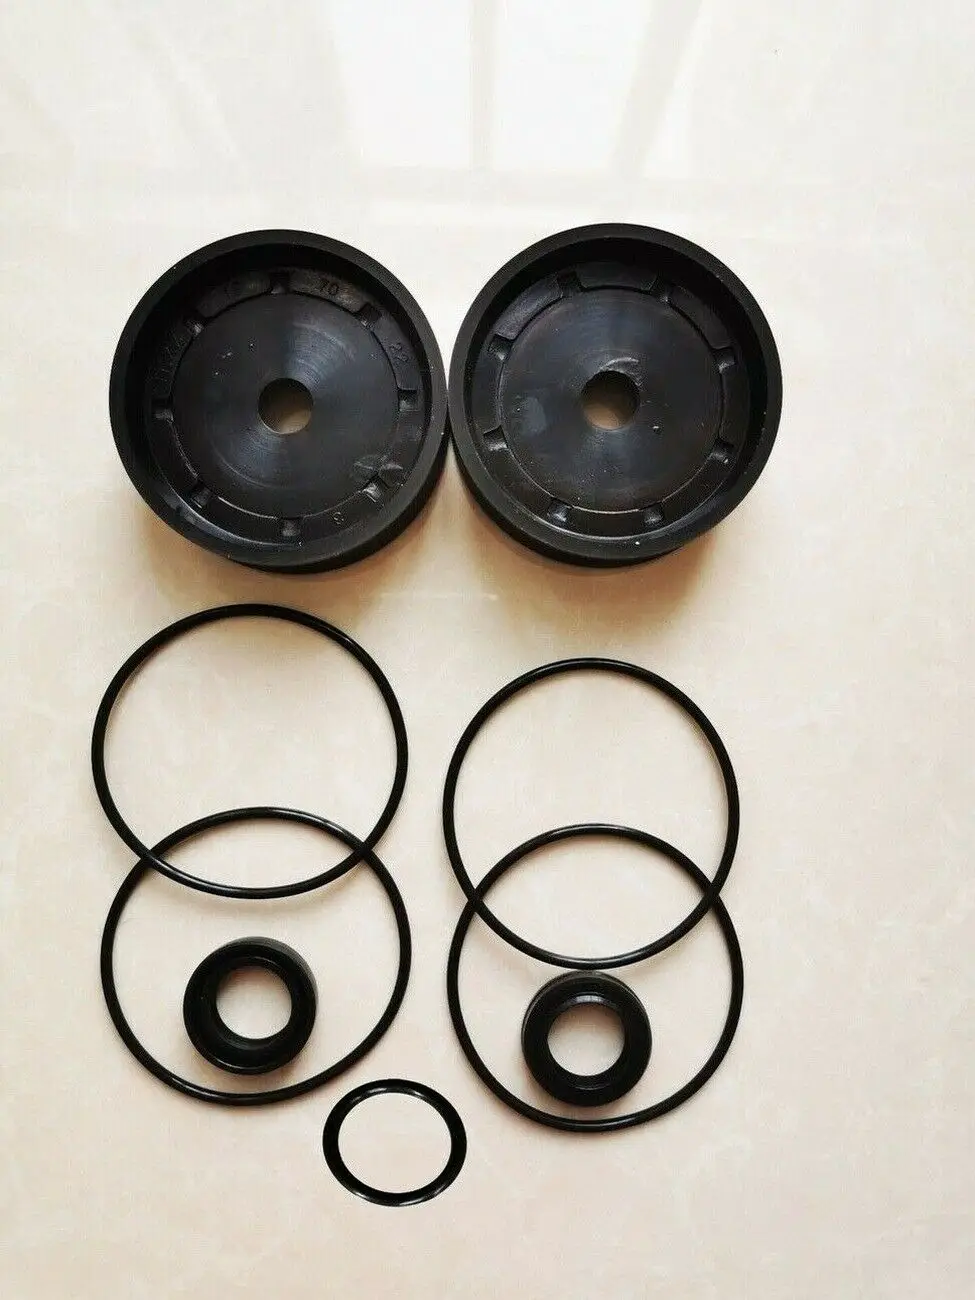 

Tire Changer Rebuild Air Cylinder Seal Ring Pad Kit 75mm Tyre Changer Rebuild 9PCS